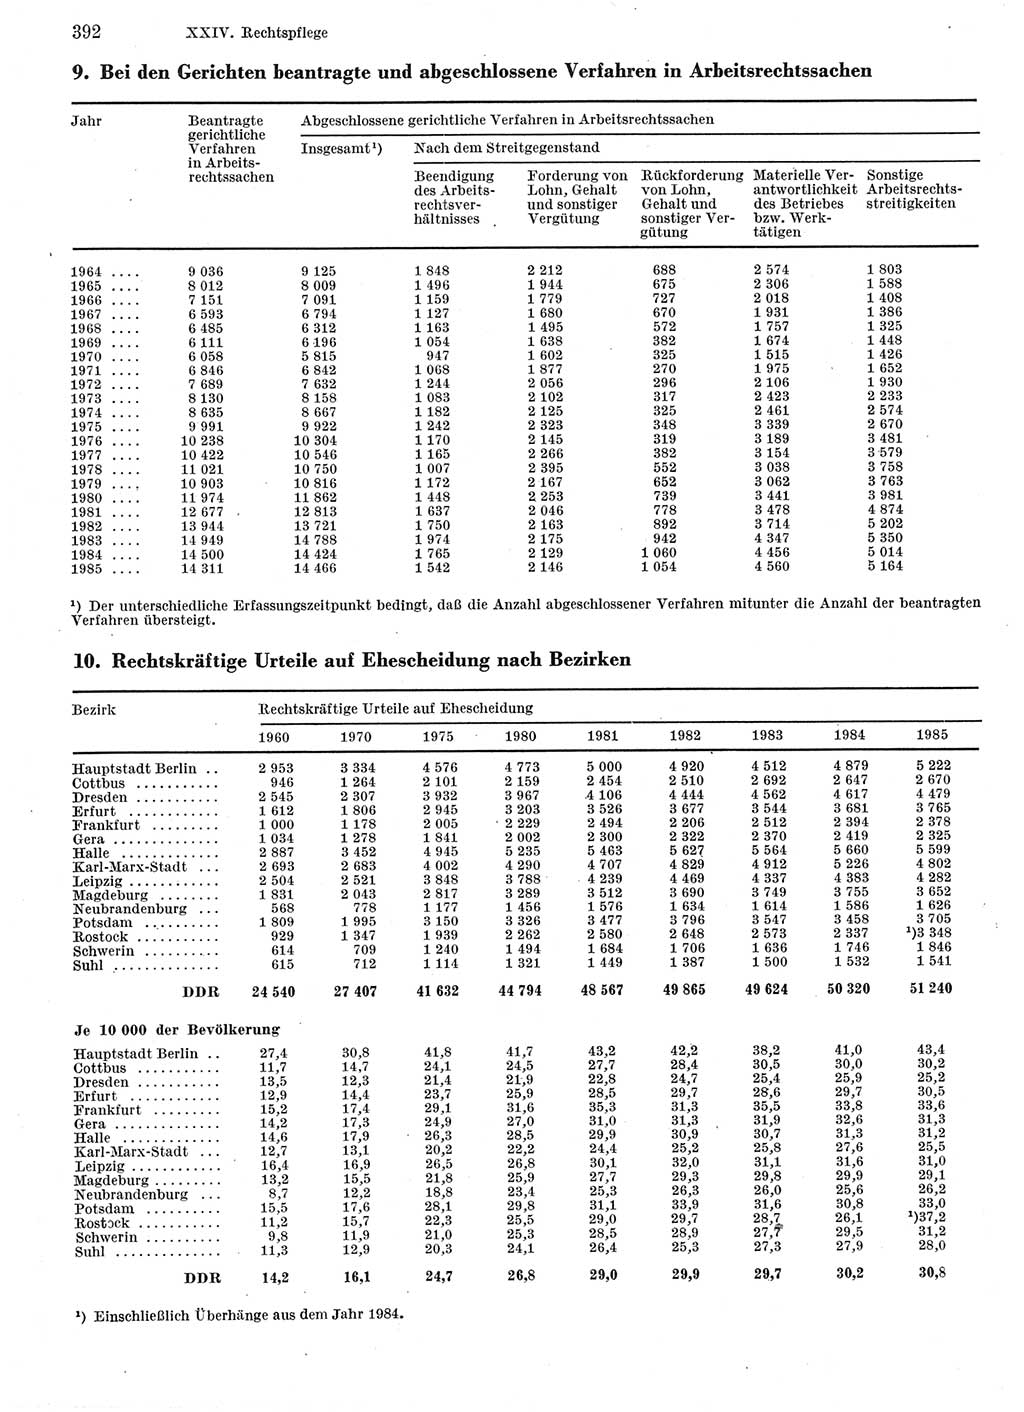 Statistisches Jahrbuch der Deutschen Demokratischen Republik (DDR) 1986, Seite 392 (Stat. Jb. DDR 1986, S. 392)